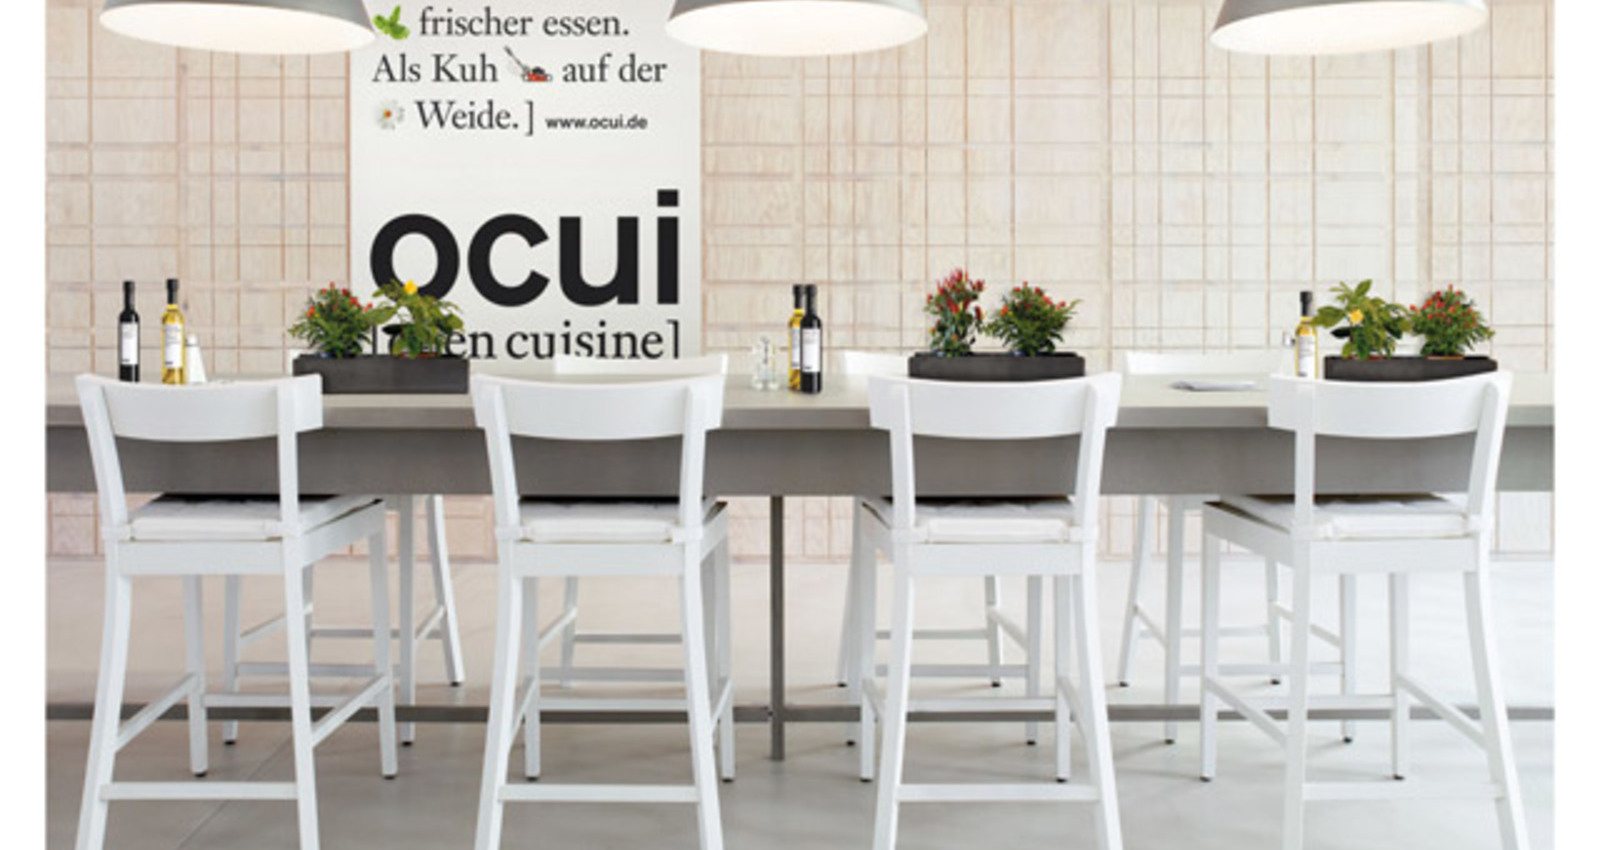 OCUI (open cuisine)